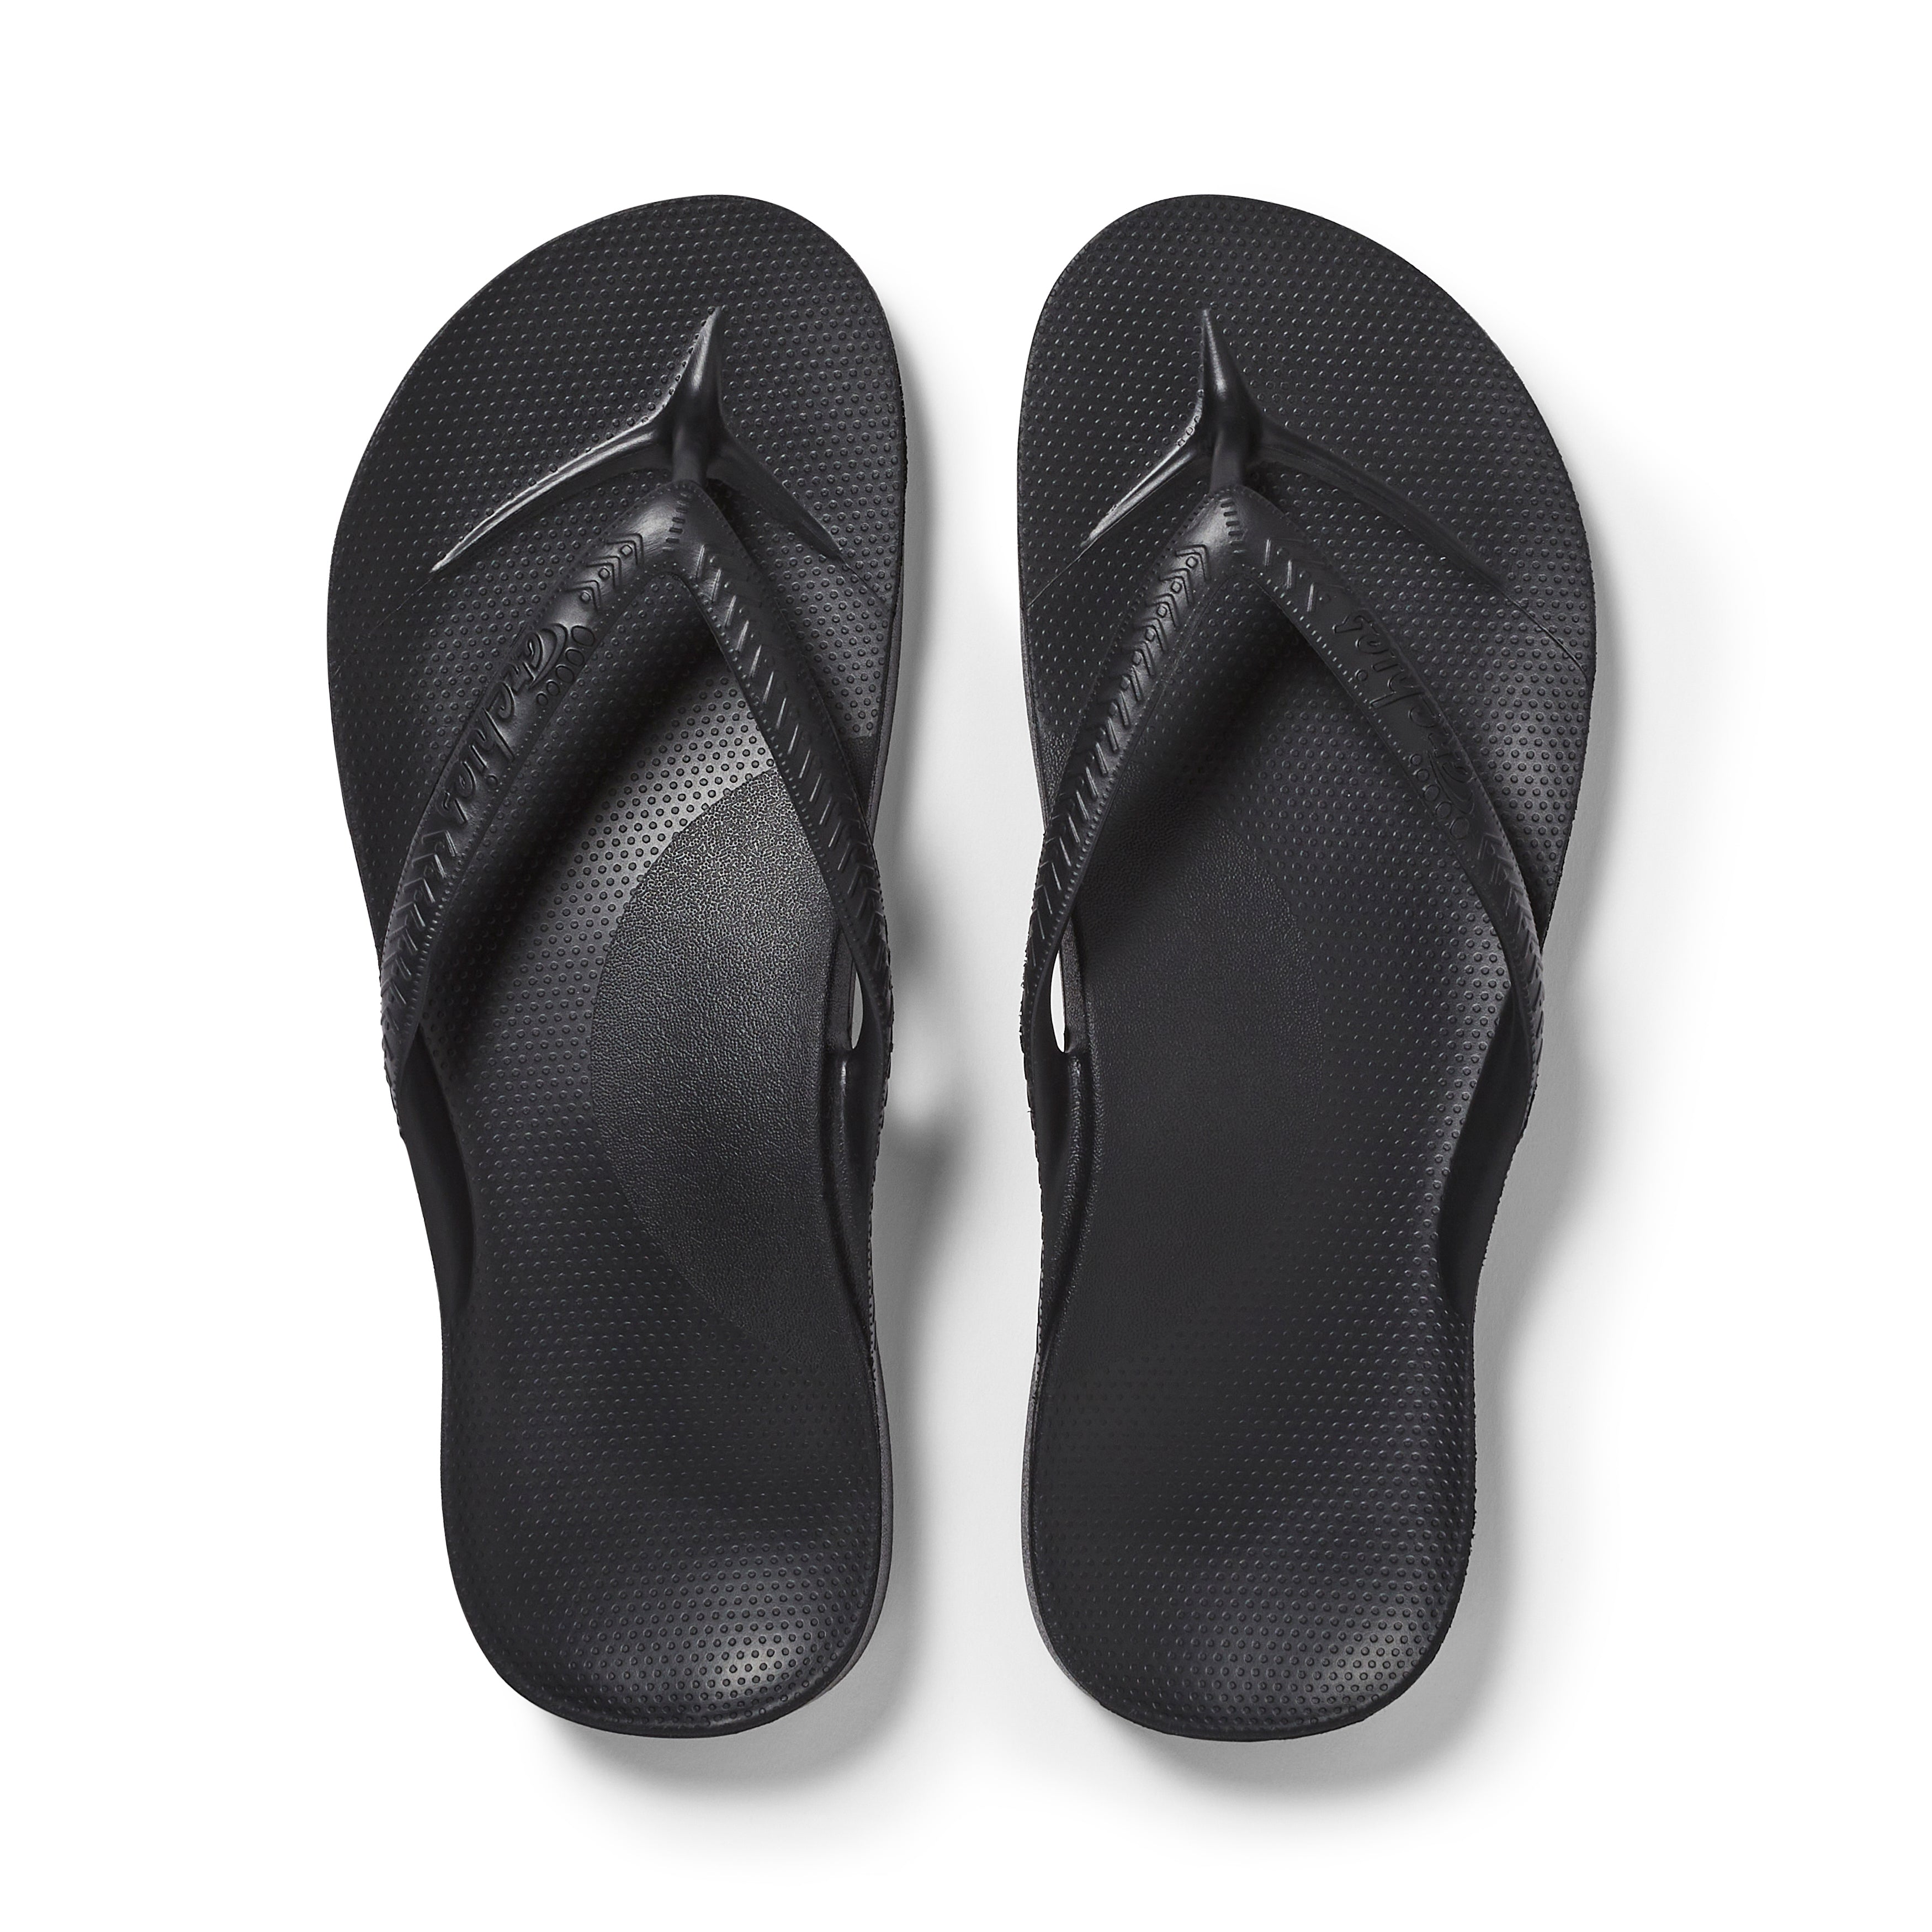 Svart – Arch Support Flip Flops – Archies Footwear Pty Ltd.